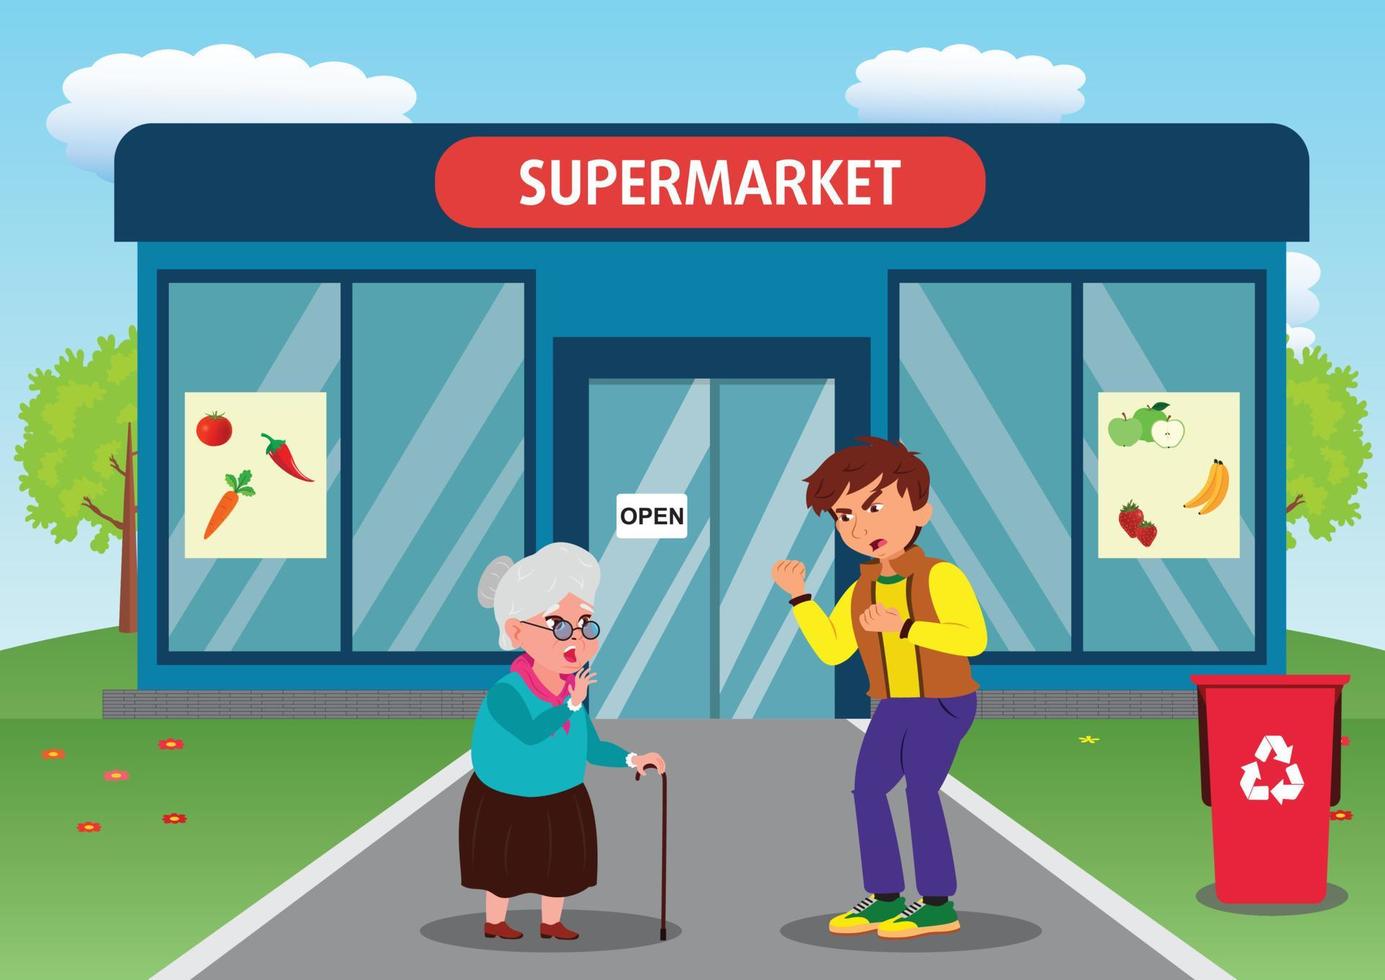 das unhöfliche Verhalten eines Jungen gegenüber einer alten Frau vor einem Supermarkt vektor